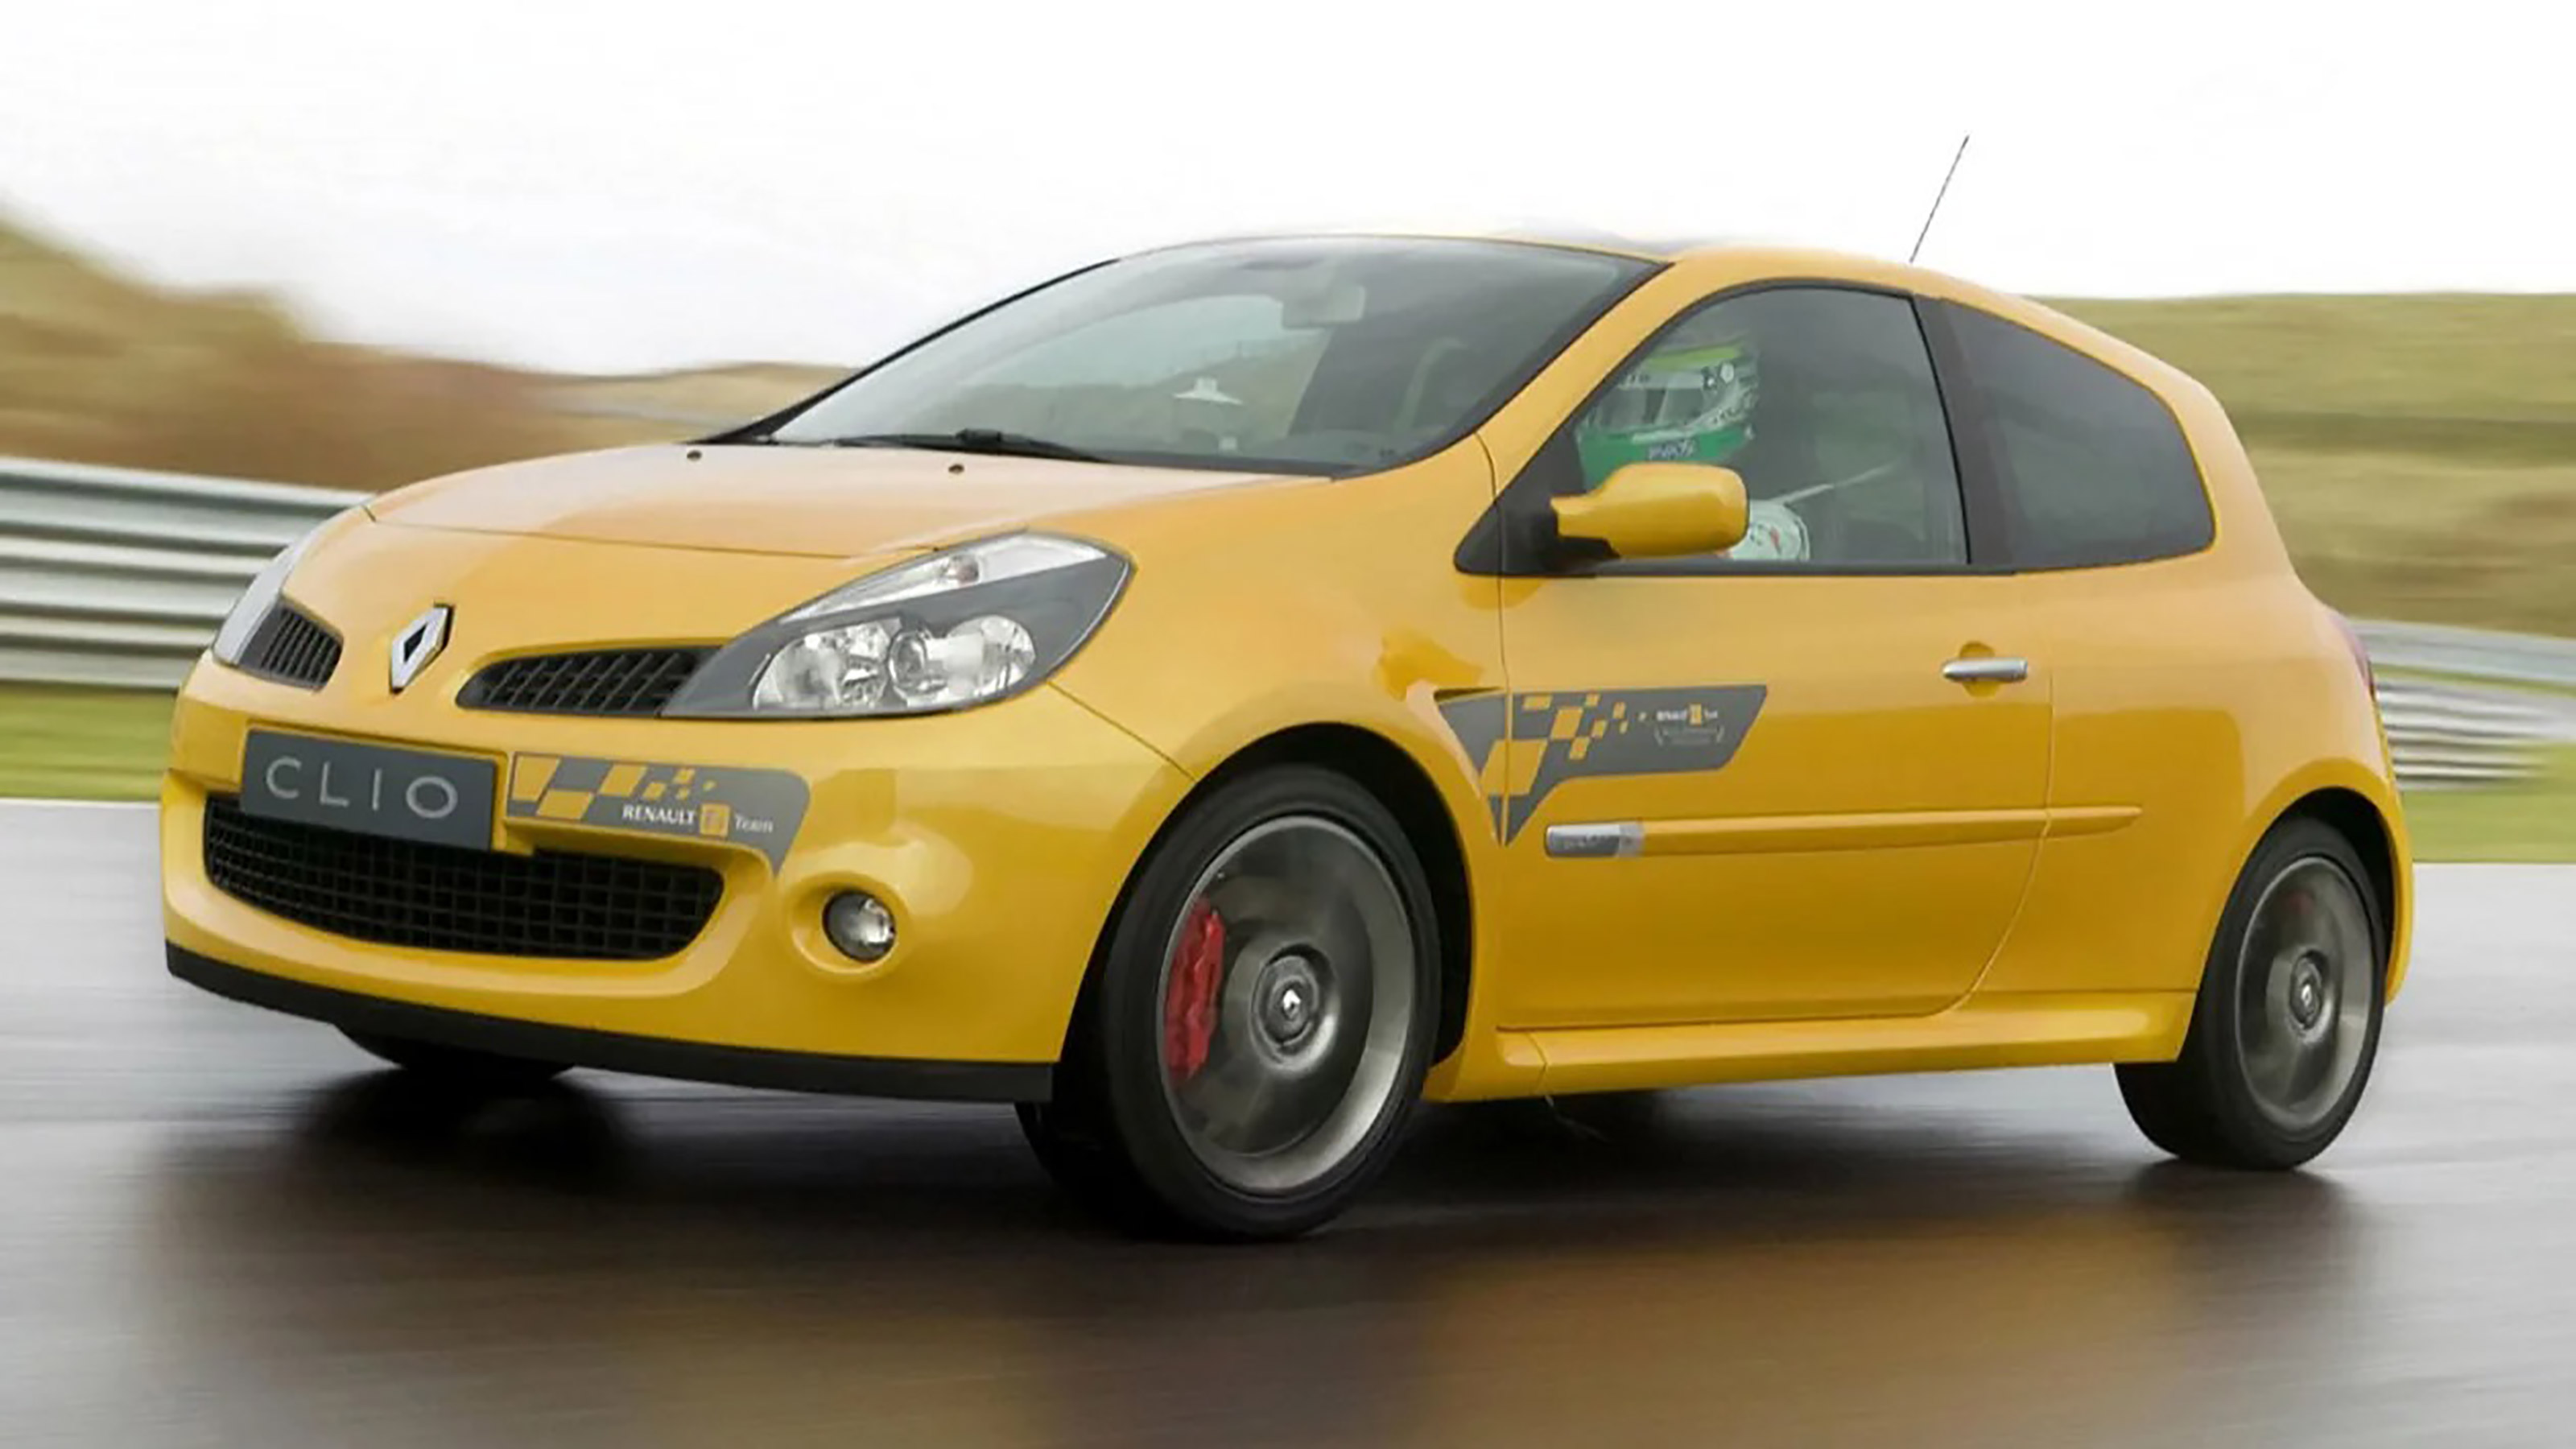 2010 Renault Clio Gordini £8,000